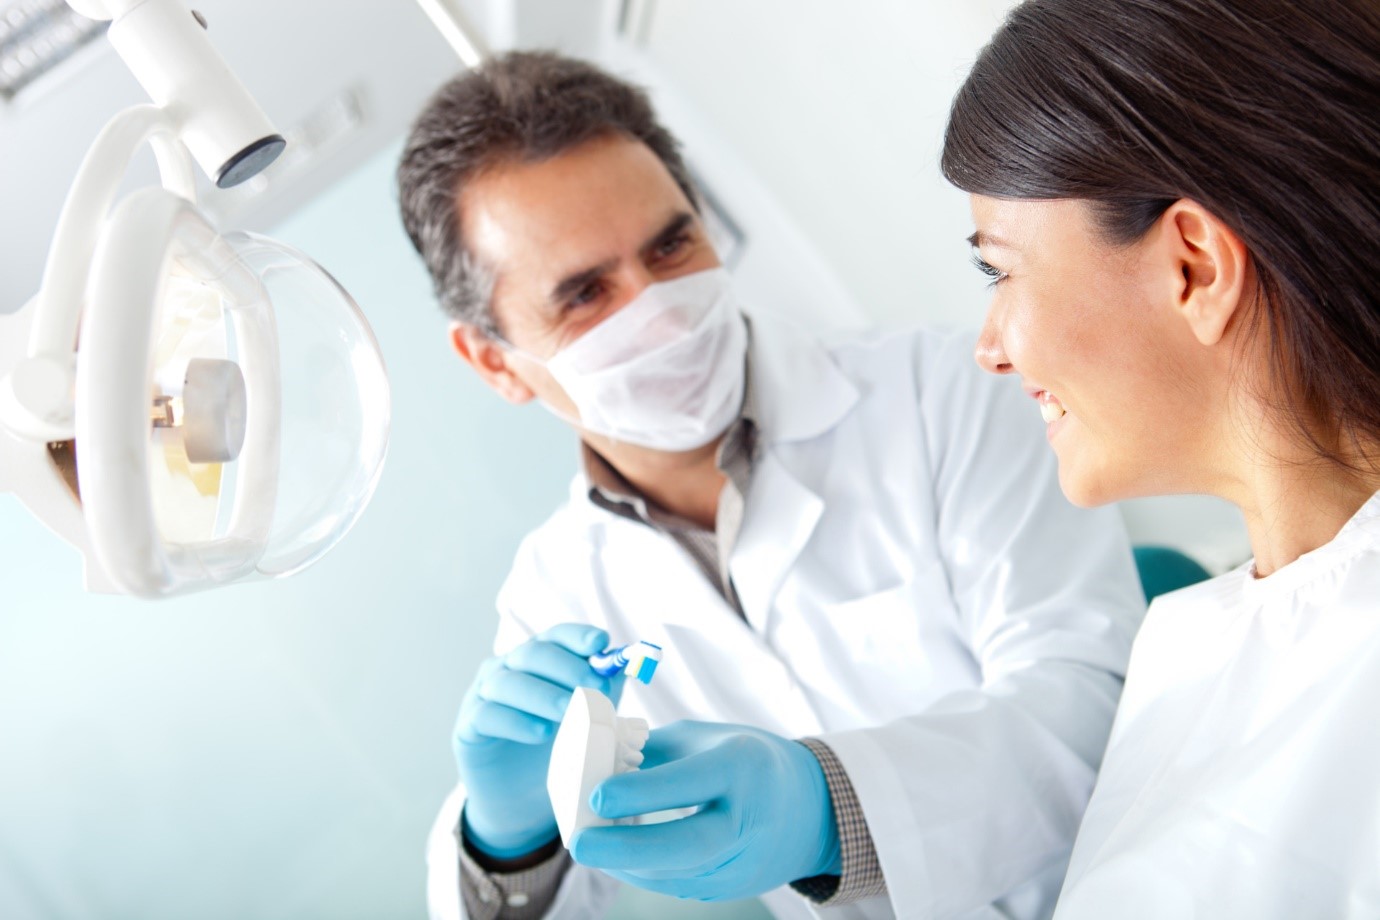 Nguyên nhân và cách khắc phục răng bị đau sau khi trám